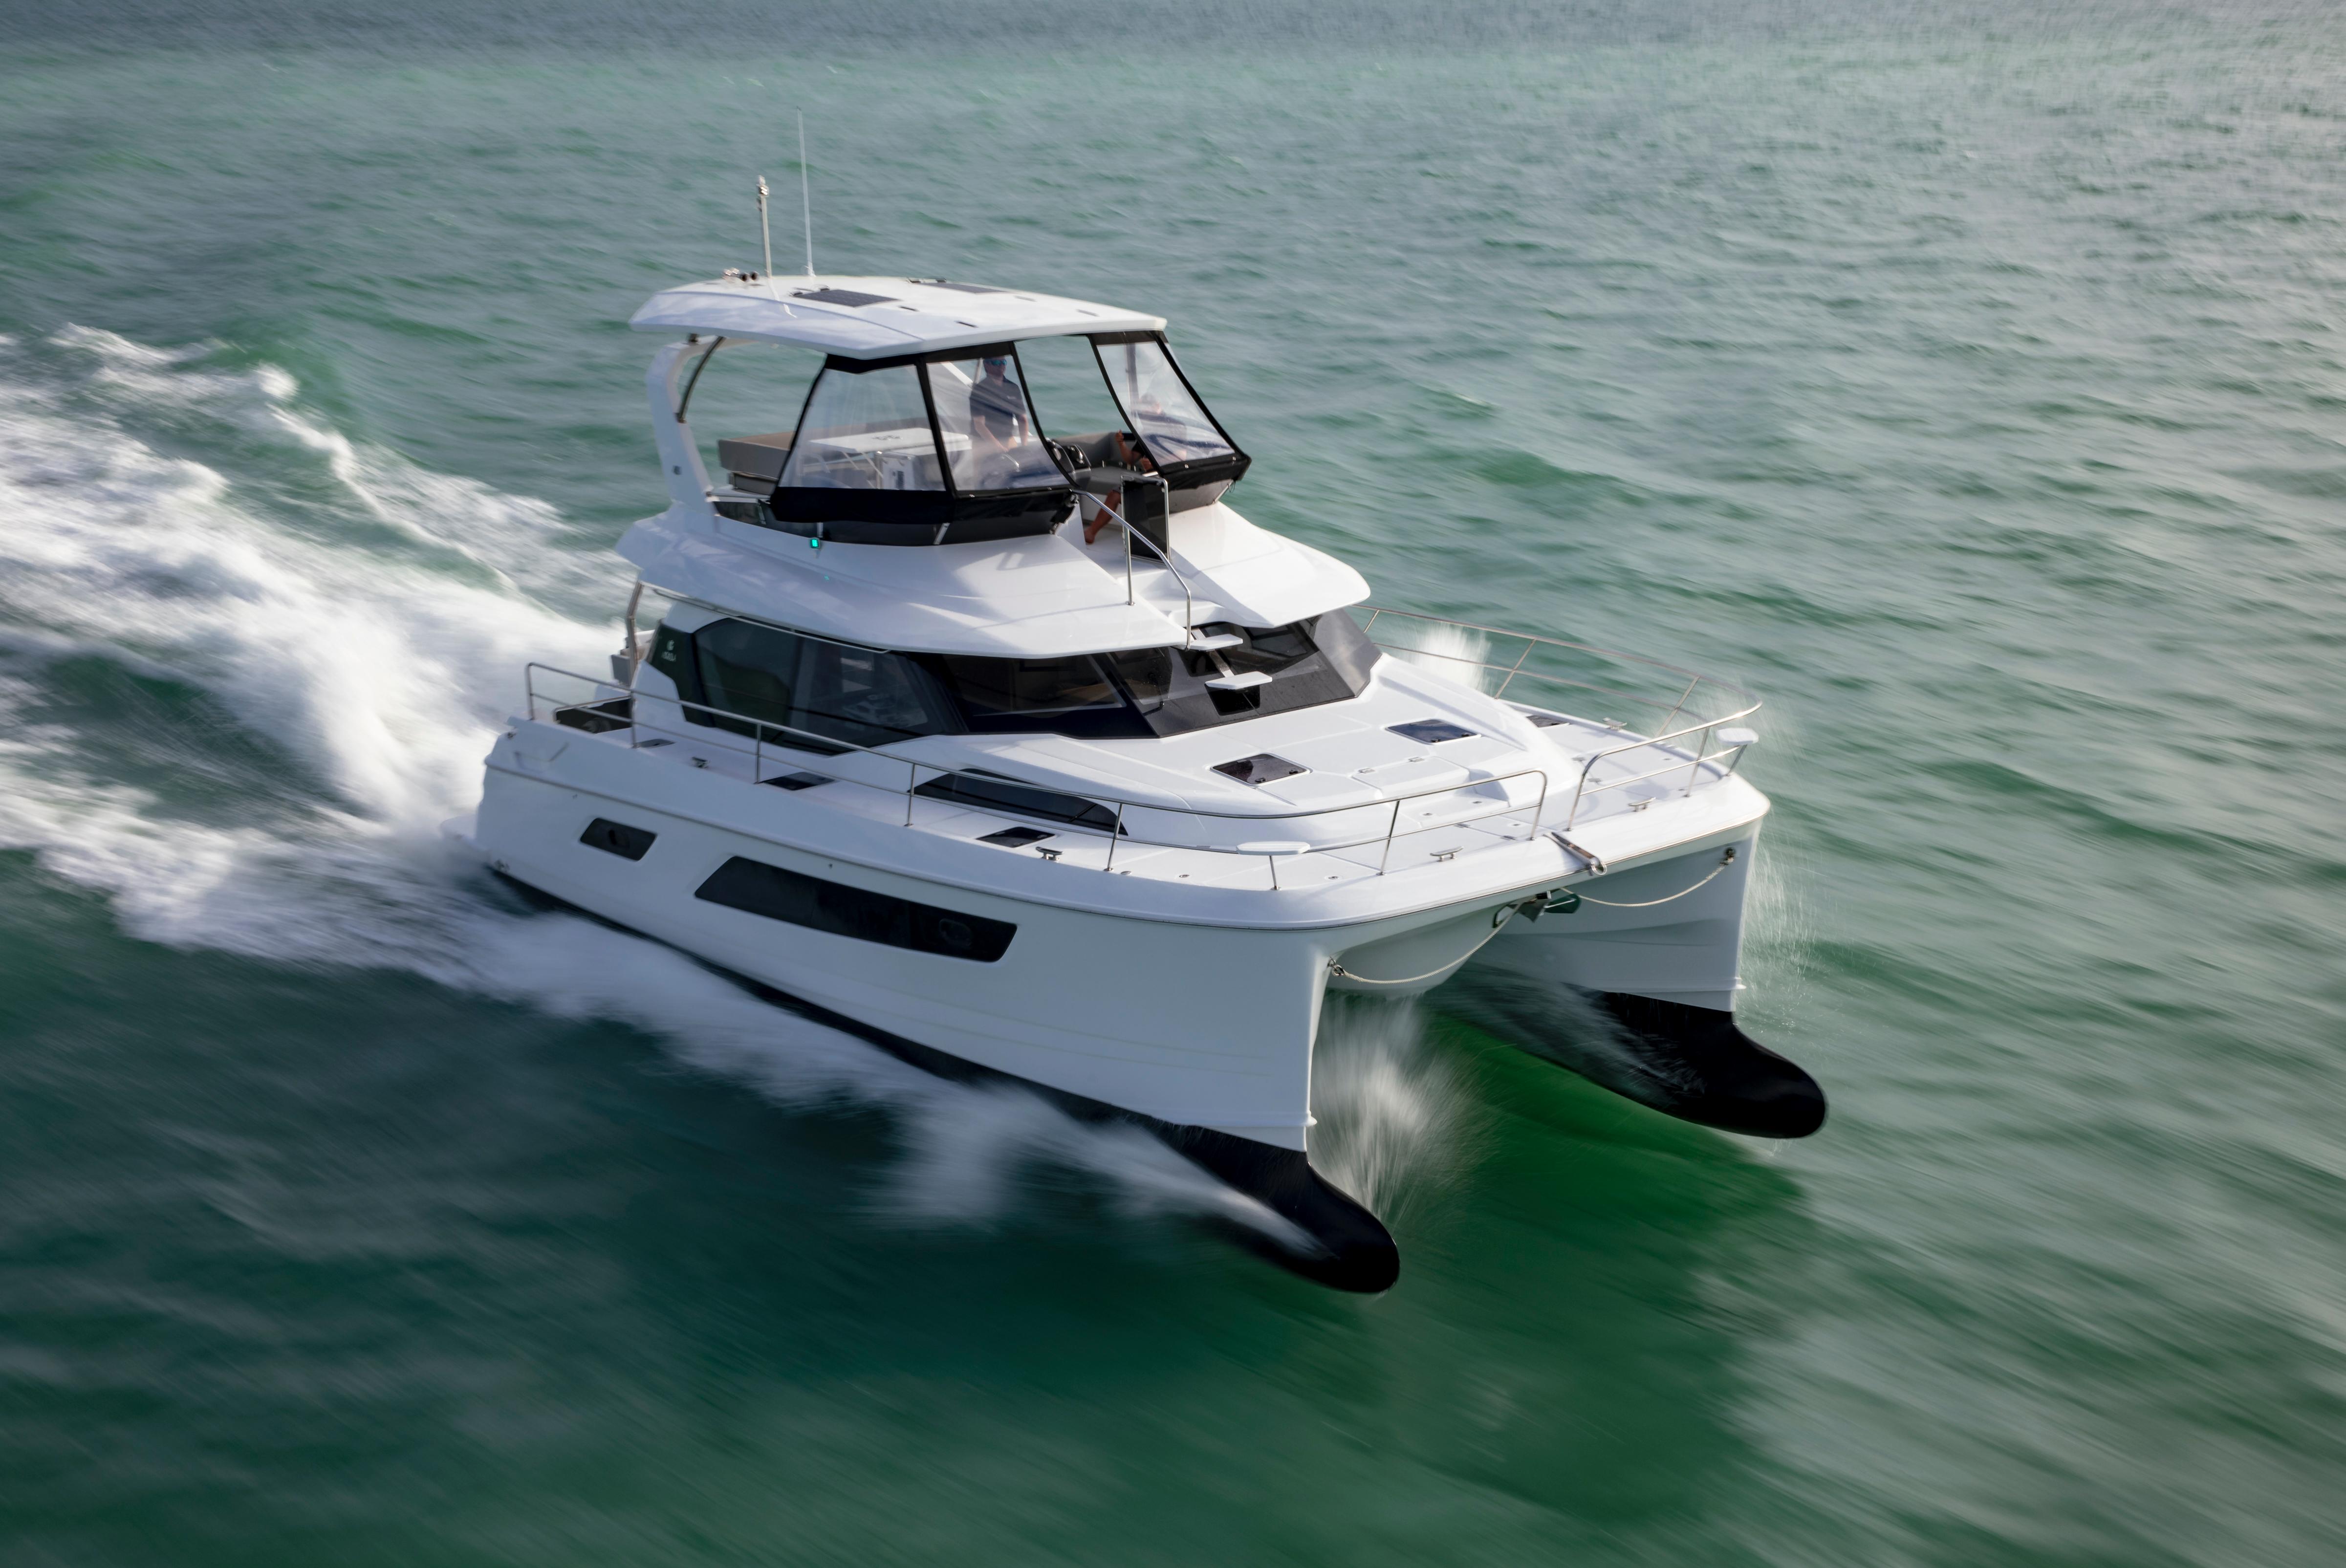 aquila 44 yacht power catamaran price